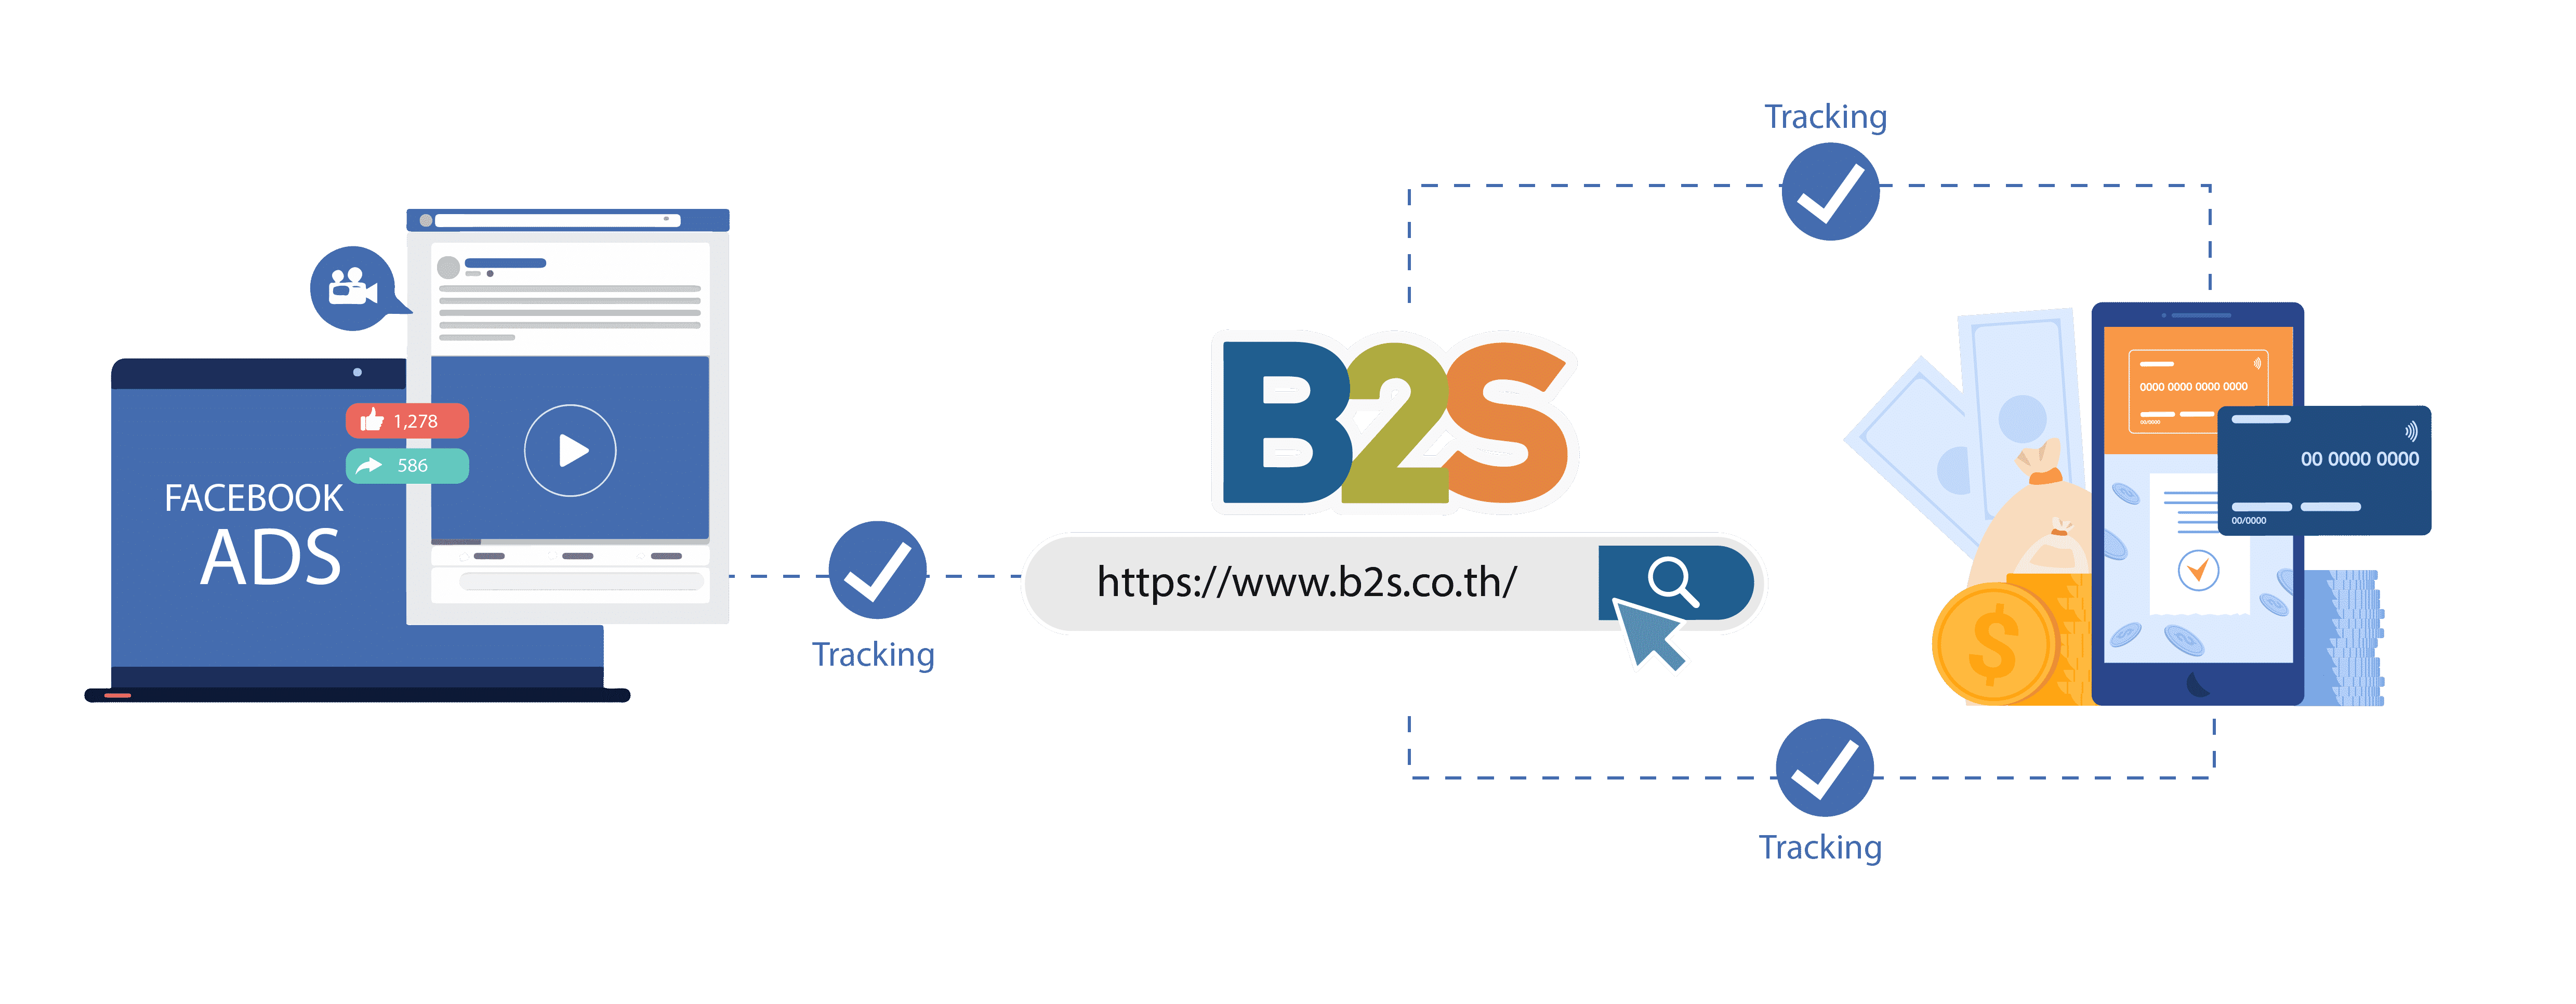 marketyze-B2S-case-study-01